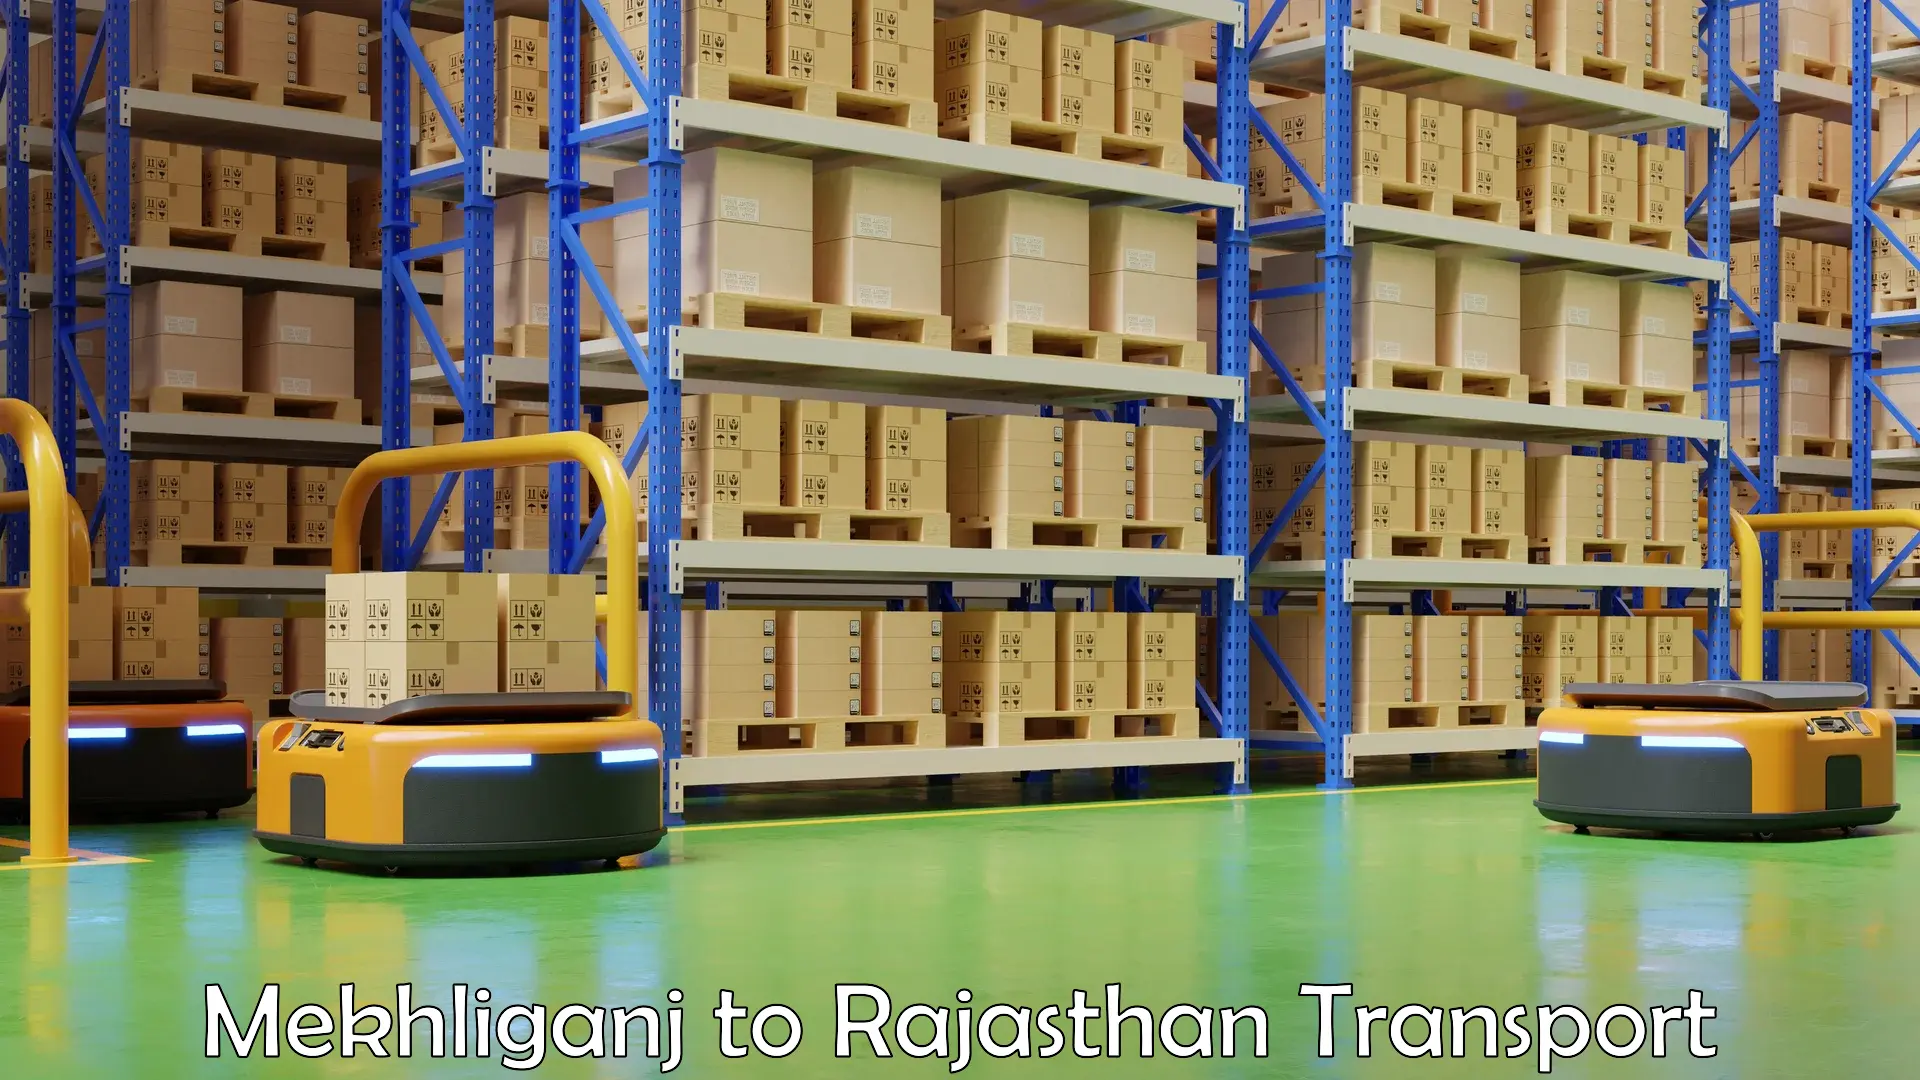 Lorry transport service Mekhliganj to Rajasthan